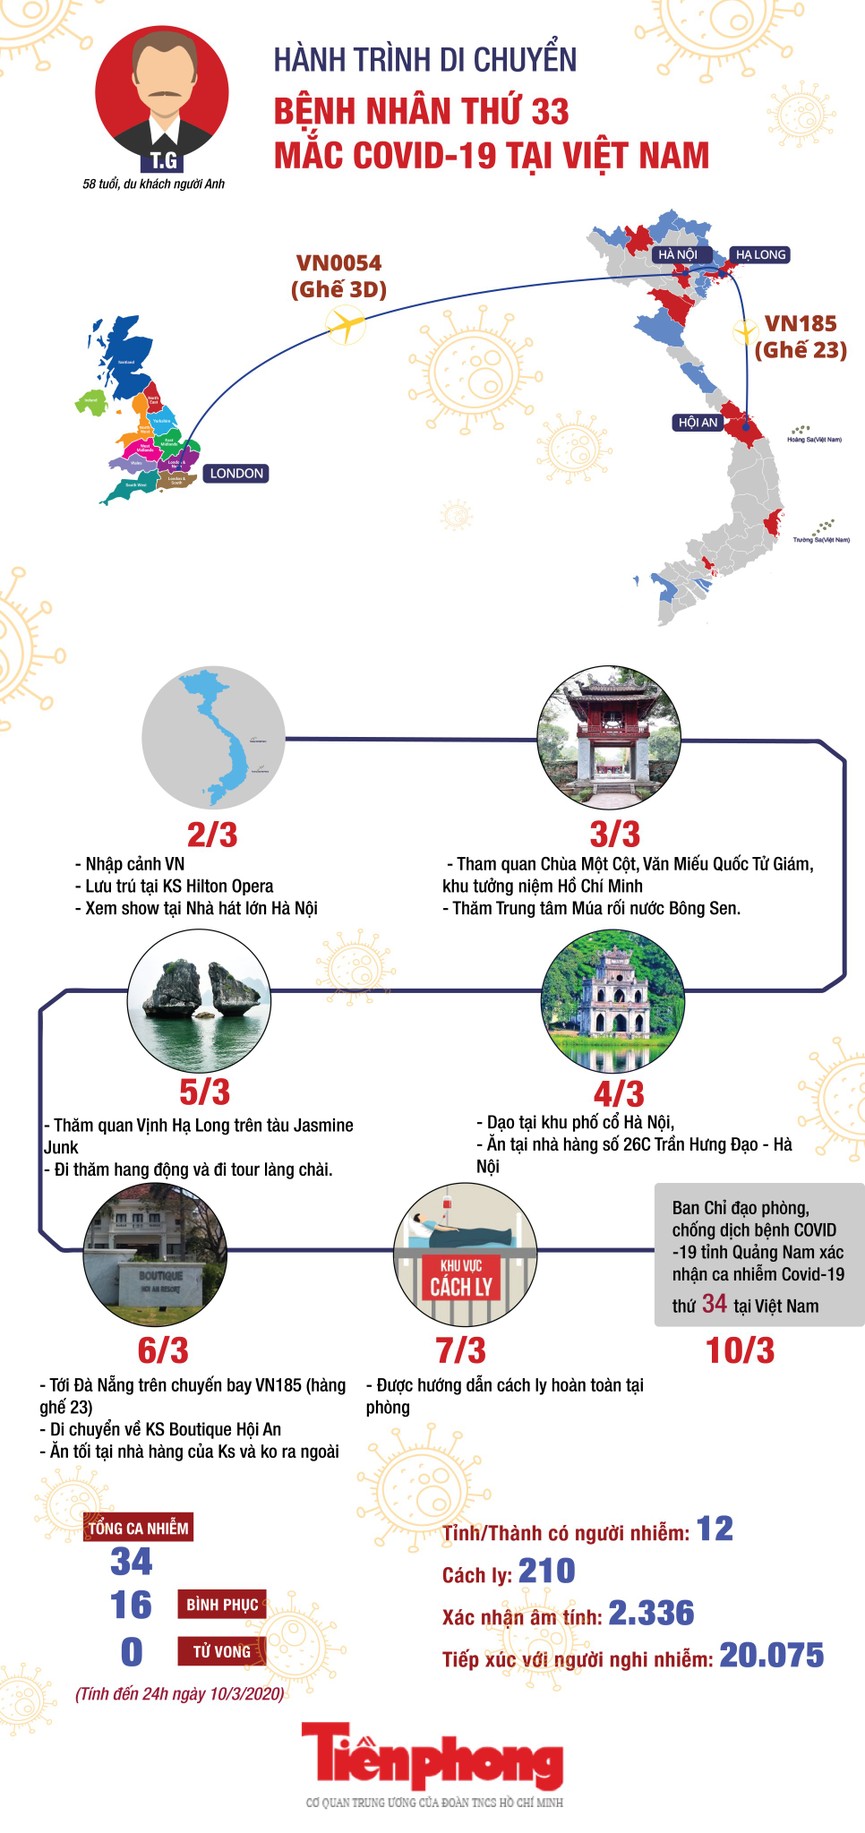 Ca bệnh thứ 33 đi qua nhiều nơi ở Hà Nội và Quảng Ninh trước khi đến Hội An - ảnh 1